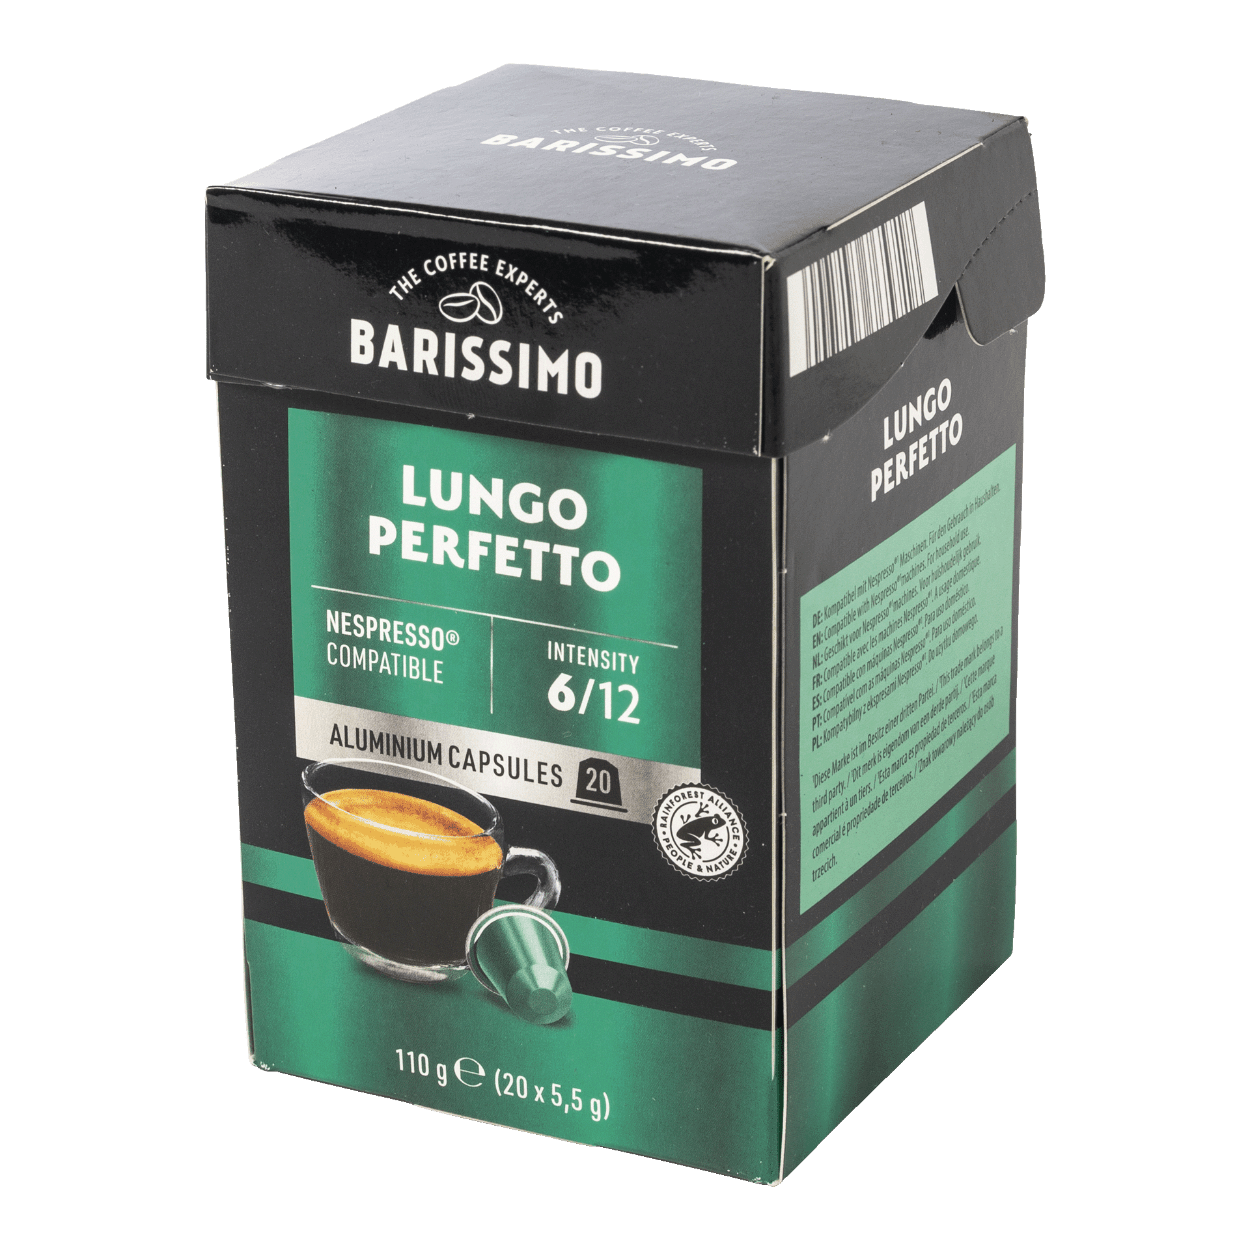 Café Lungo - 250 Capsules